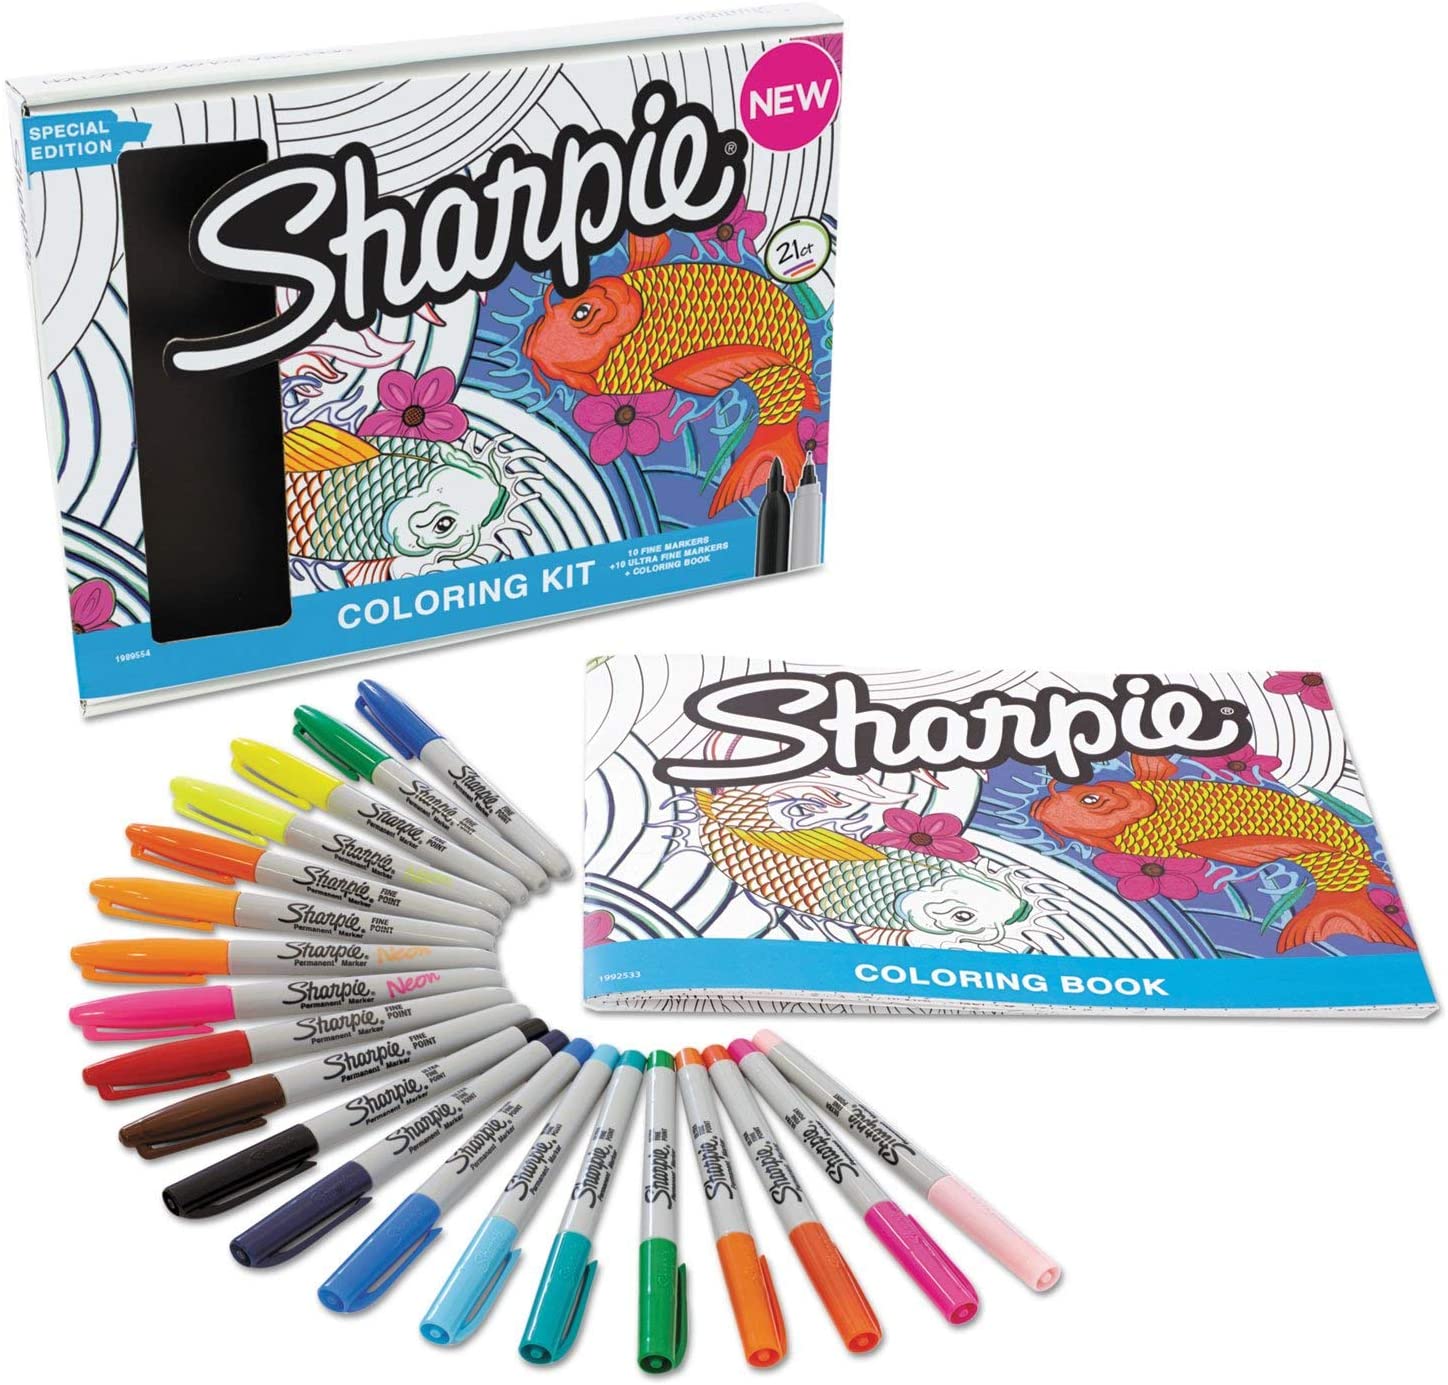 190 Sharpie ideas  sharpie, sharpie markers, sharpie art